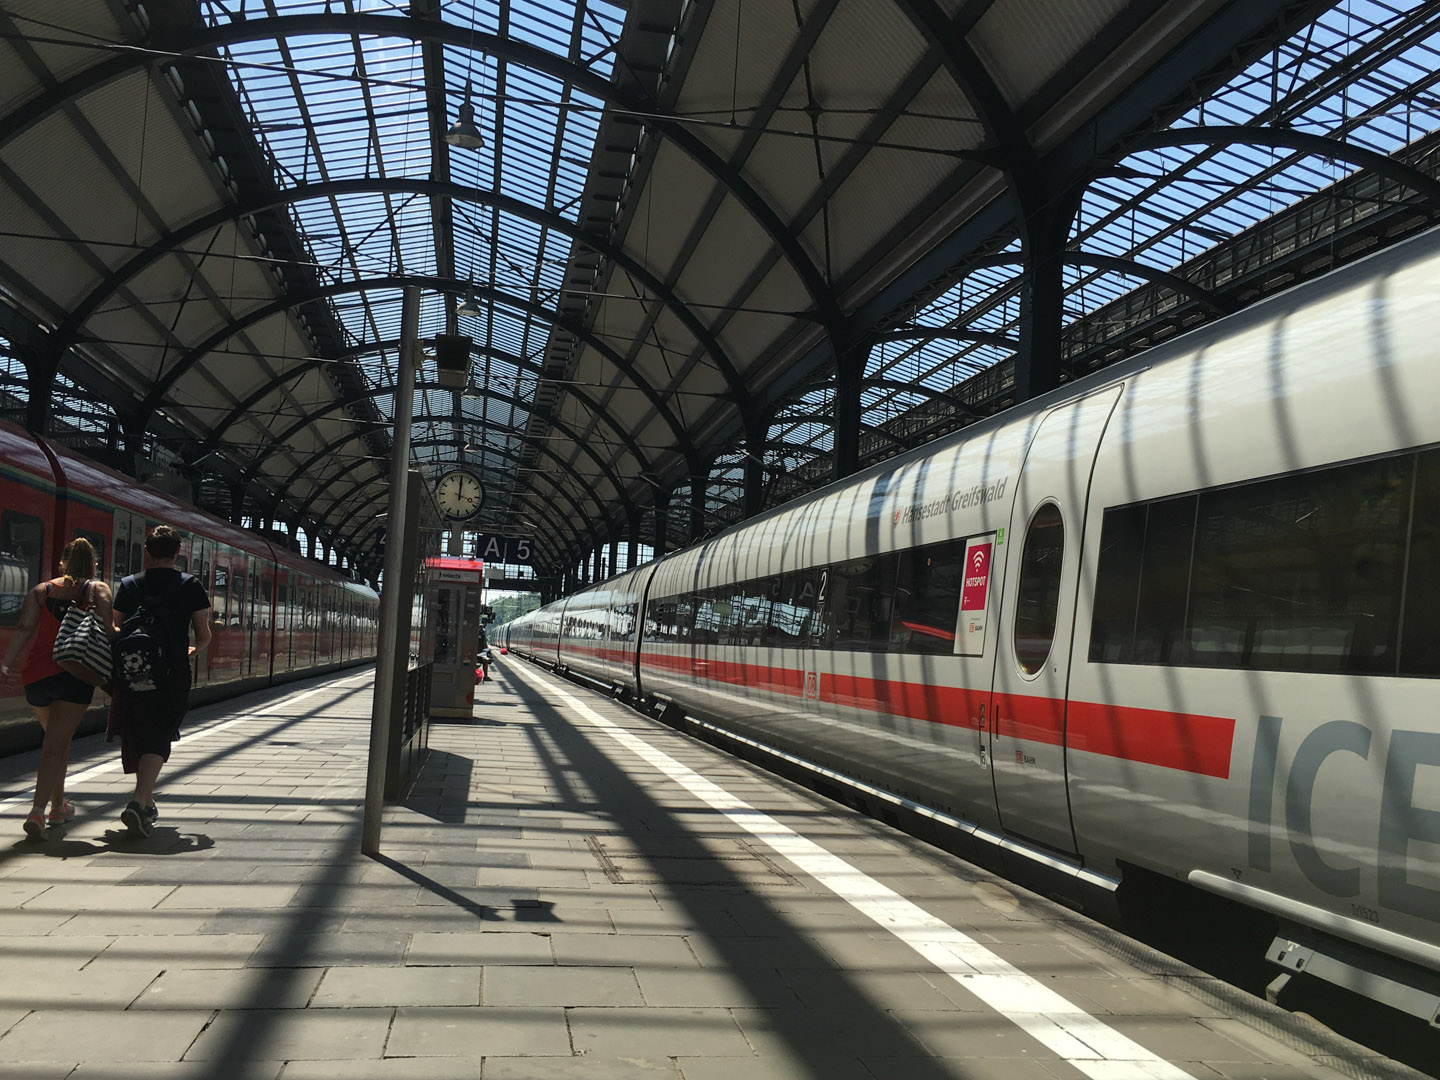 Leaving Wiesbaden for Dusseldorf